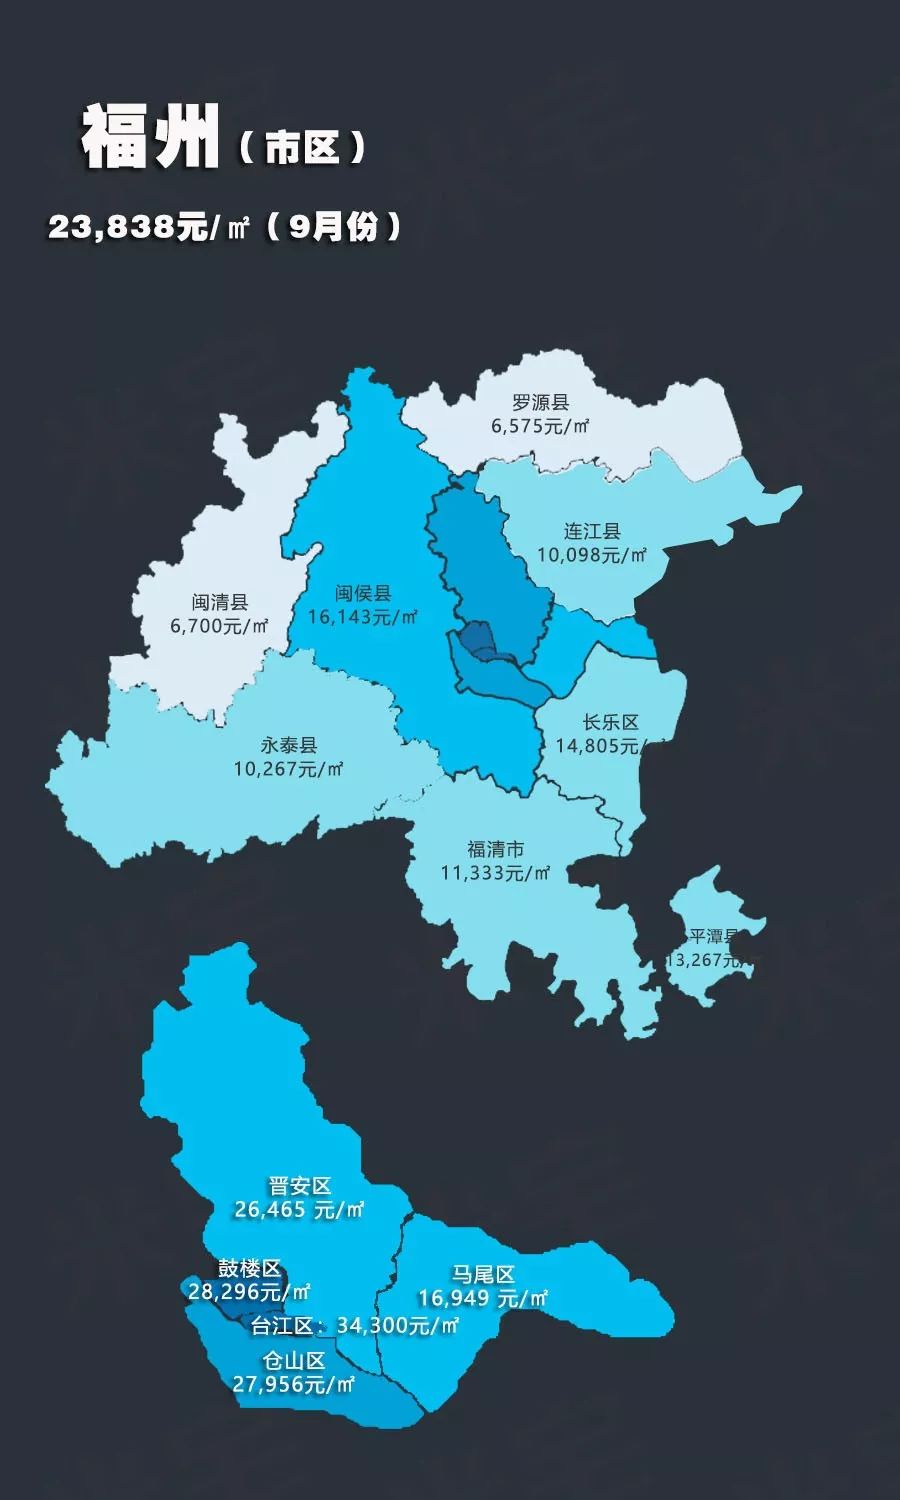 米宅发布了9月全国热点城市房价地图,数据显示,2019年9月,福州市区